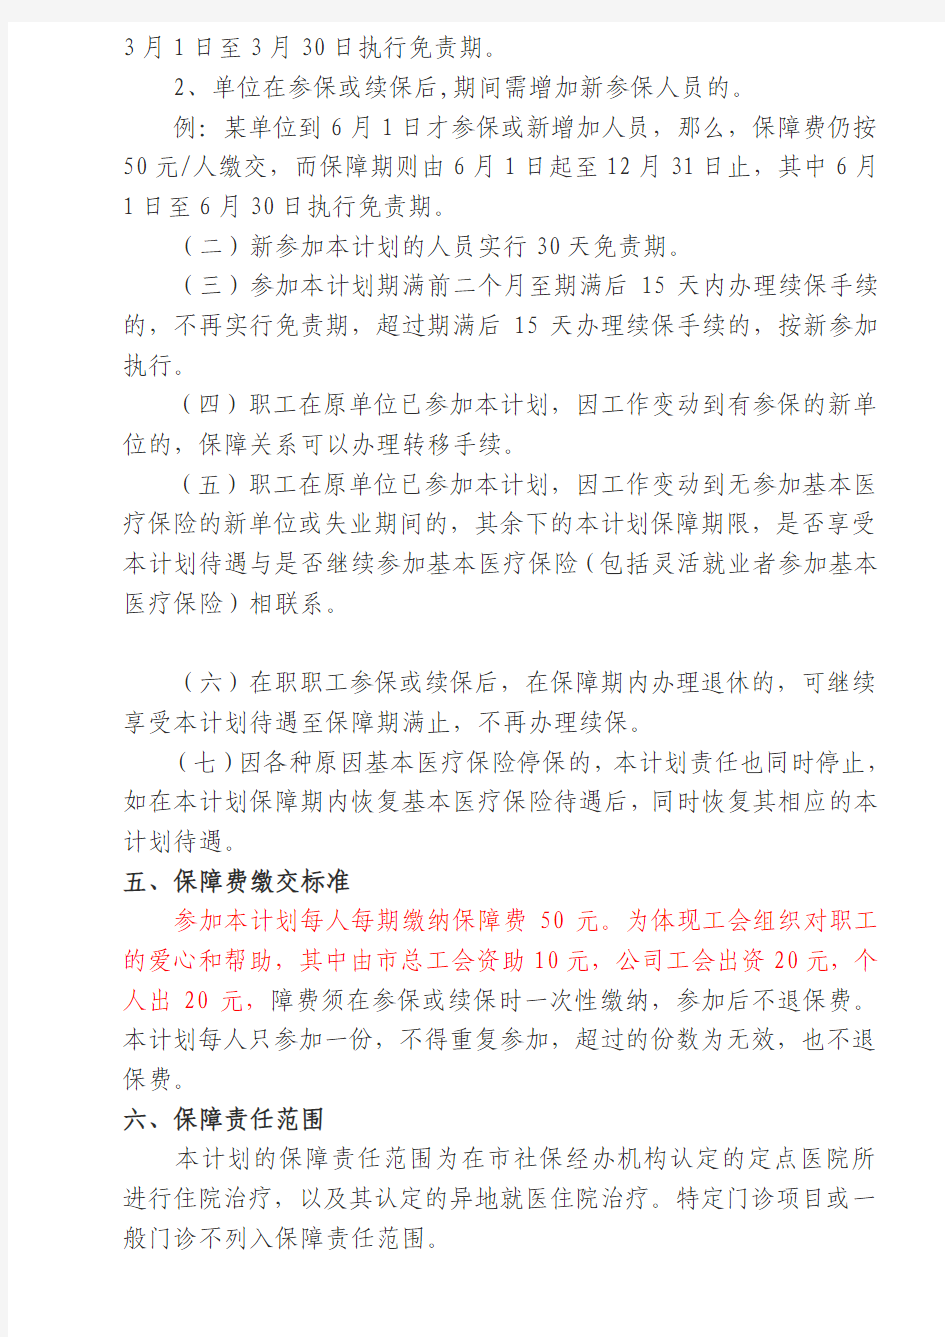 广州市职工住院医疗互助保障计划宣传资料